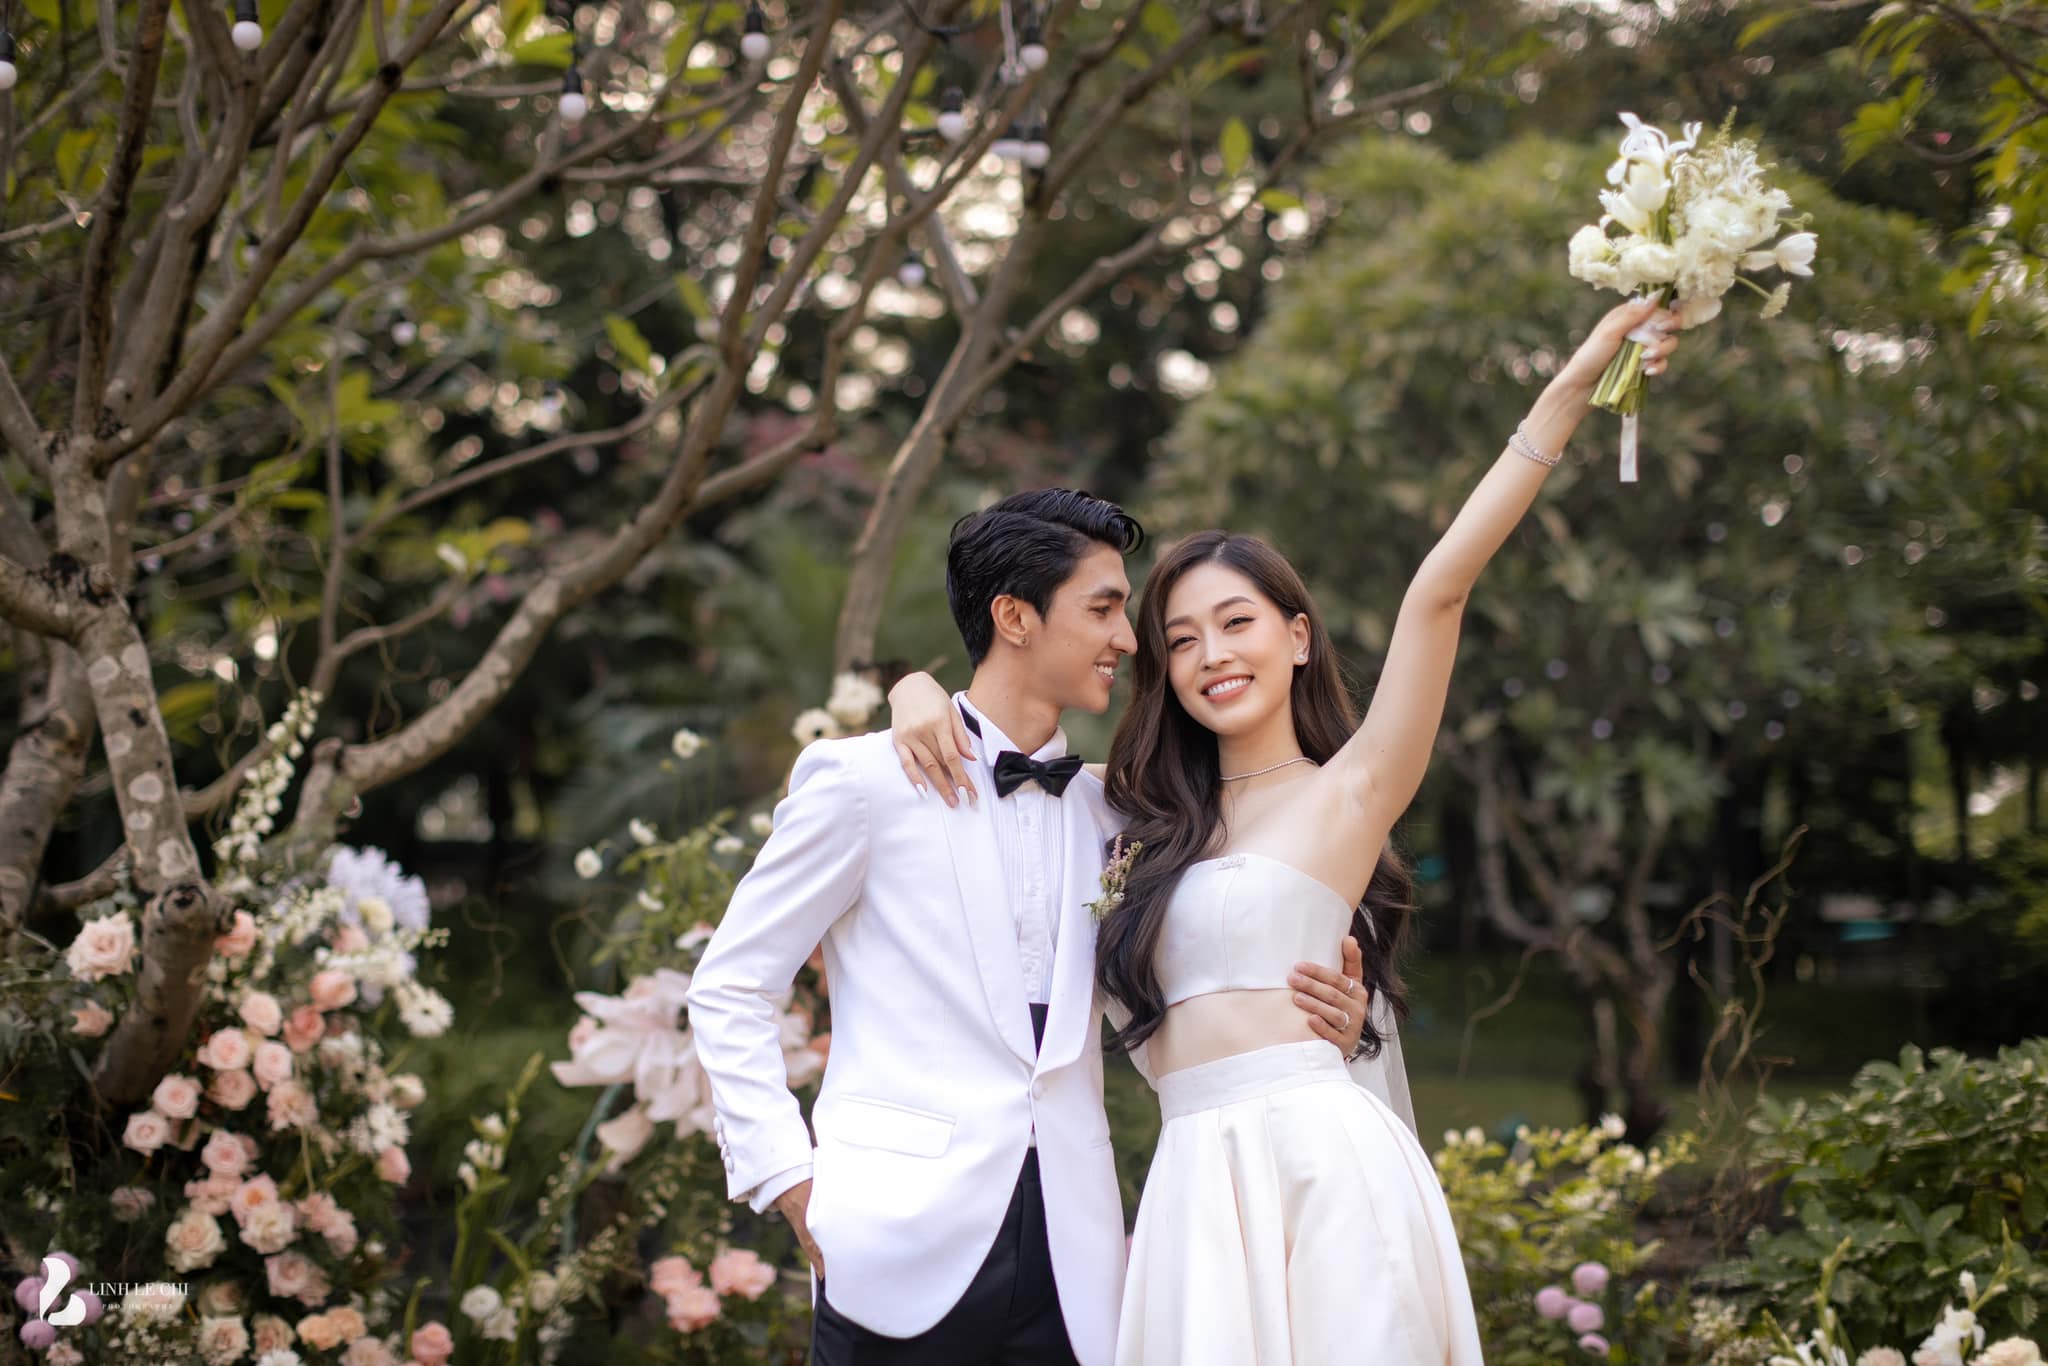 The wedding of Phương Nga and Bình An